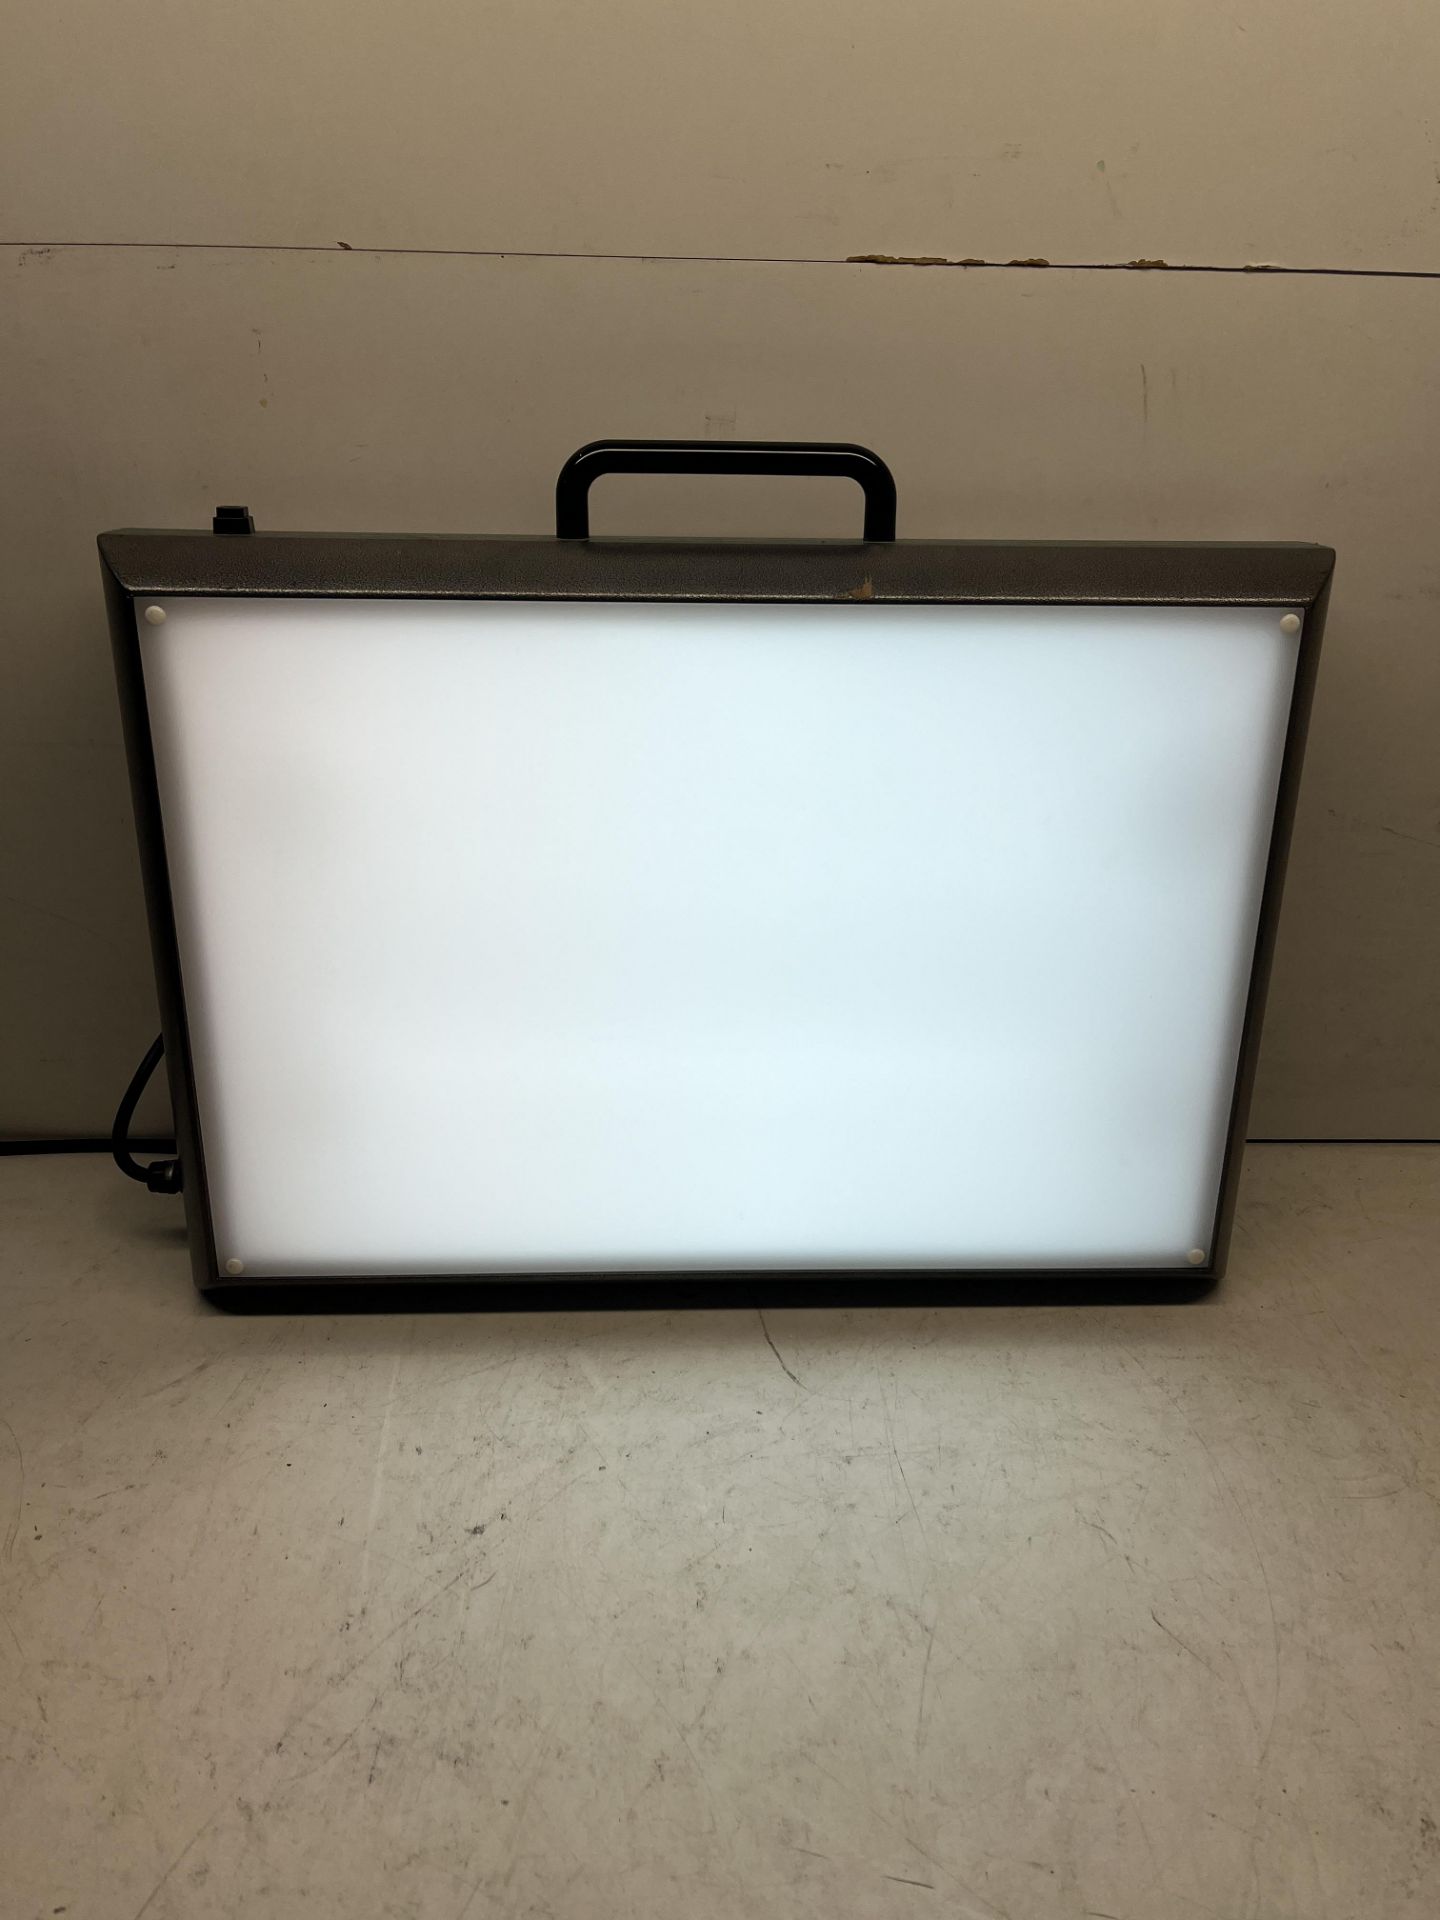 Studio Lamp Model: 710-407X S/N: 26389 - Image 4 of 4